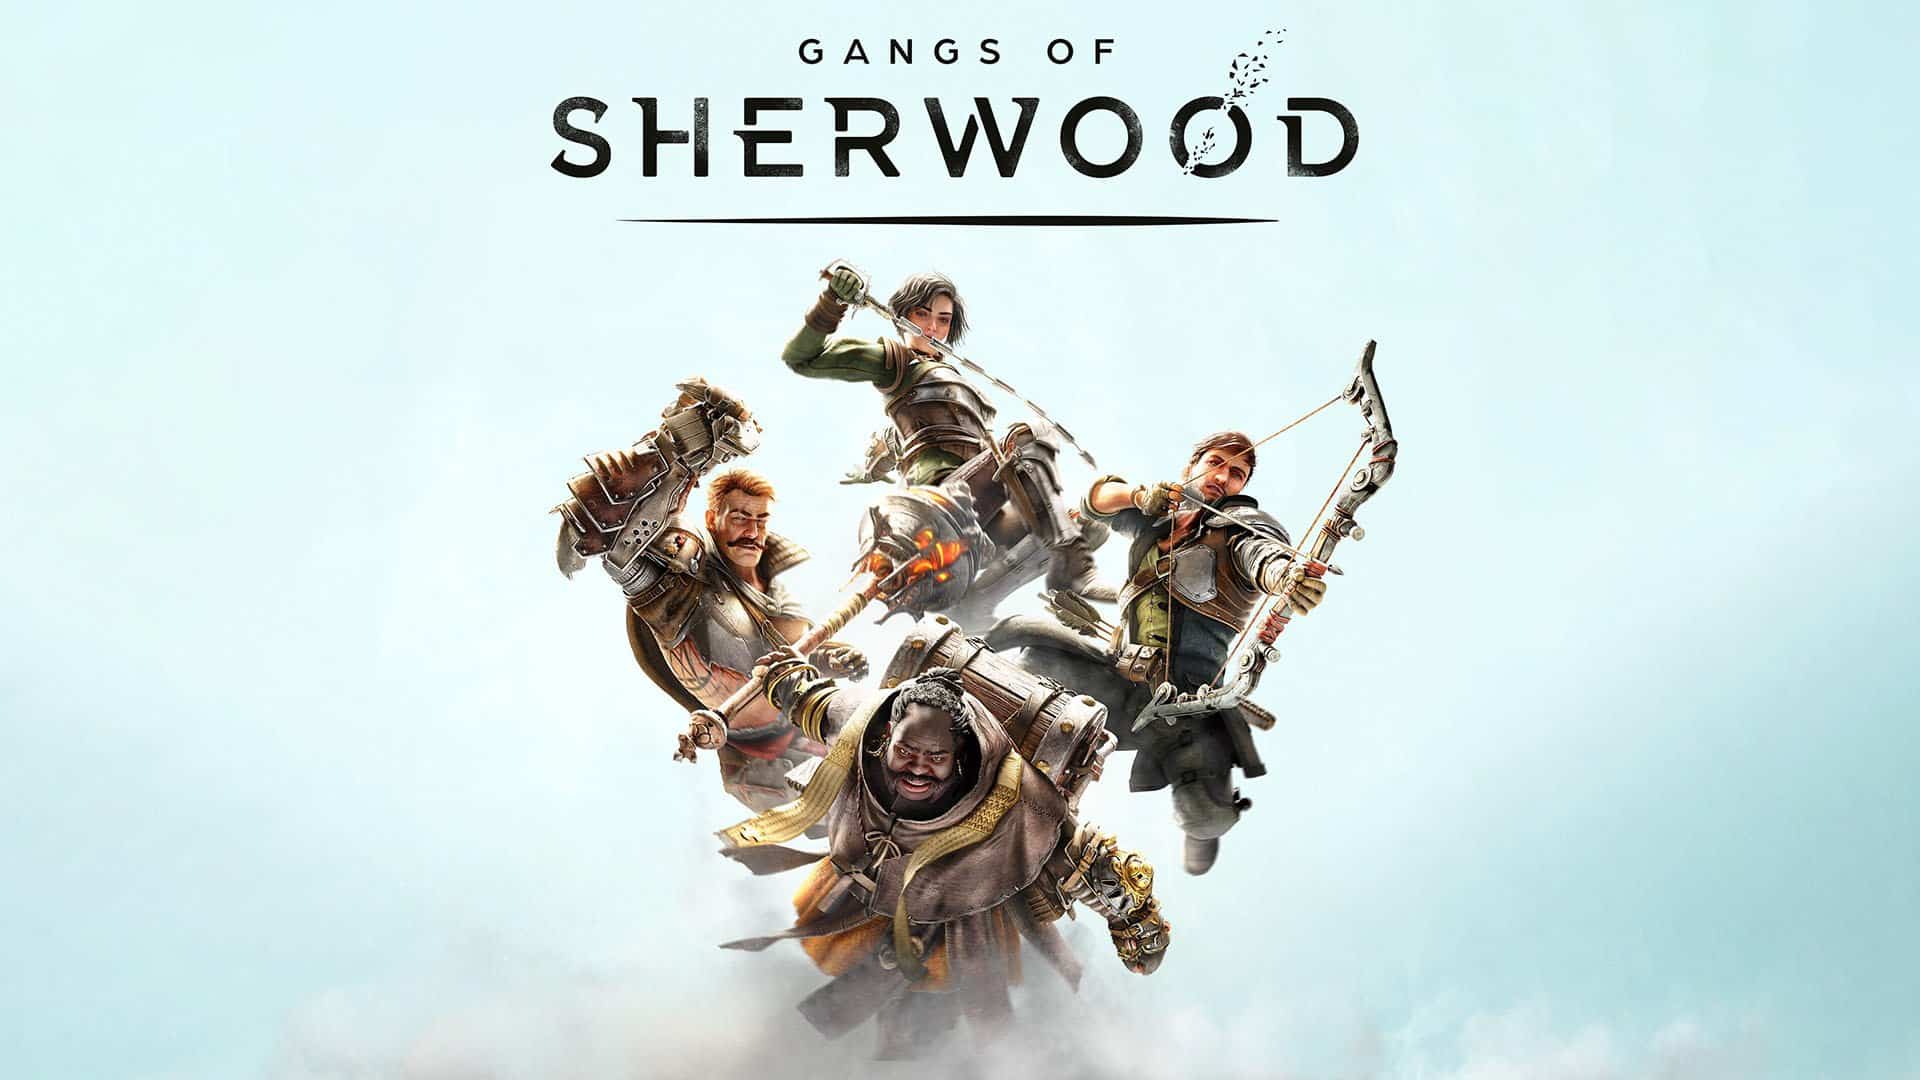 Gangs of Sherwood : Le jeu d’action coopératif Robin des Bois sortira le 19 octobre prochain